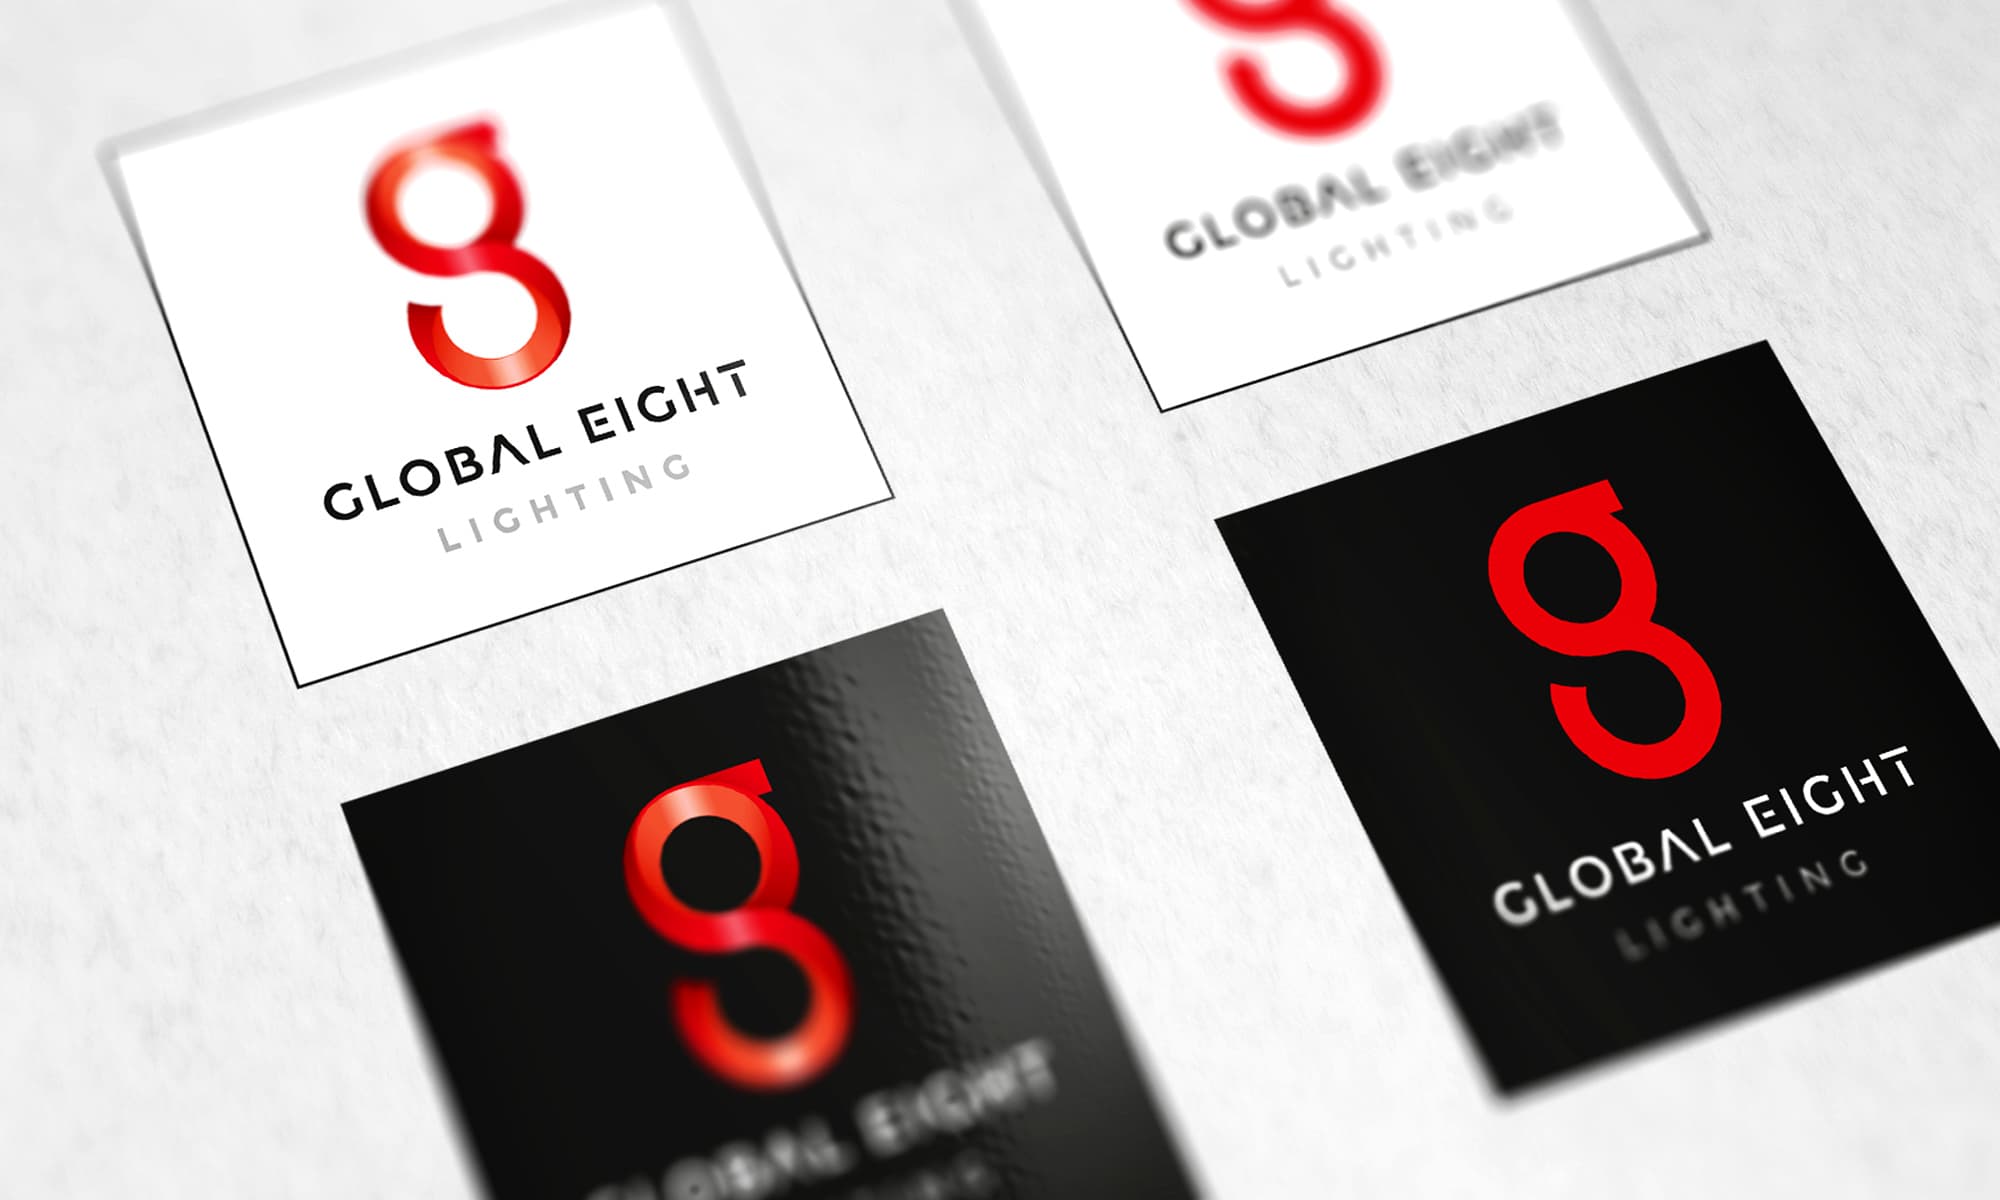 Global Eight Lighting Branding - Modern Logo Design variations